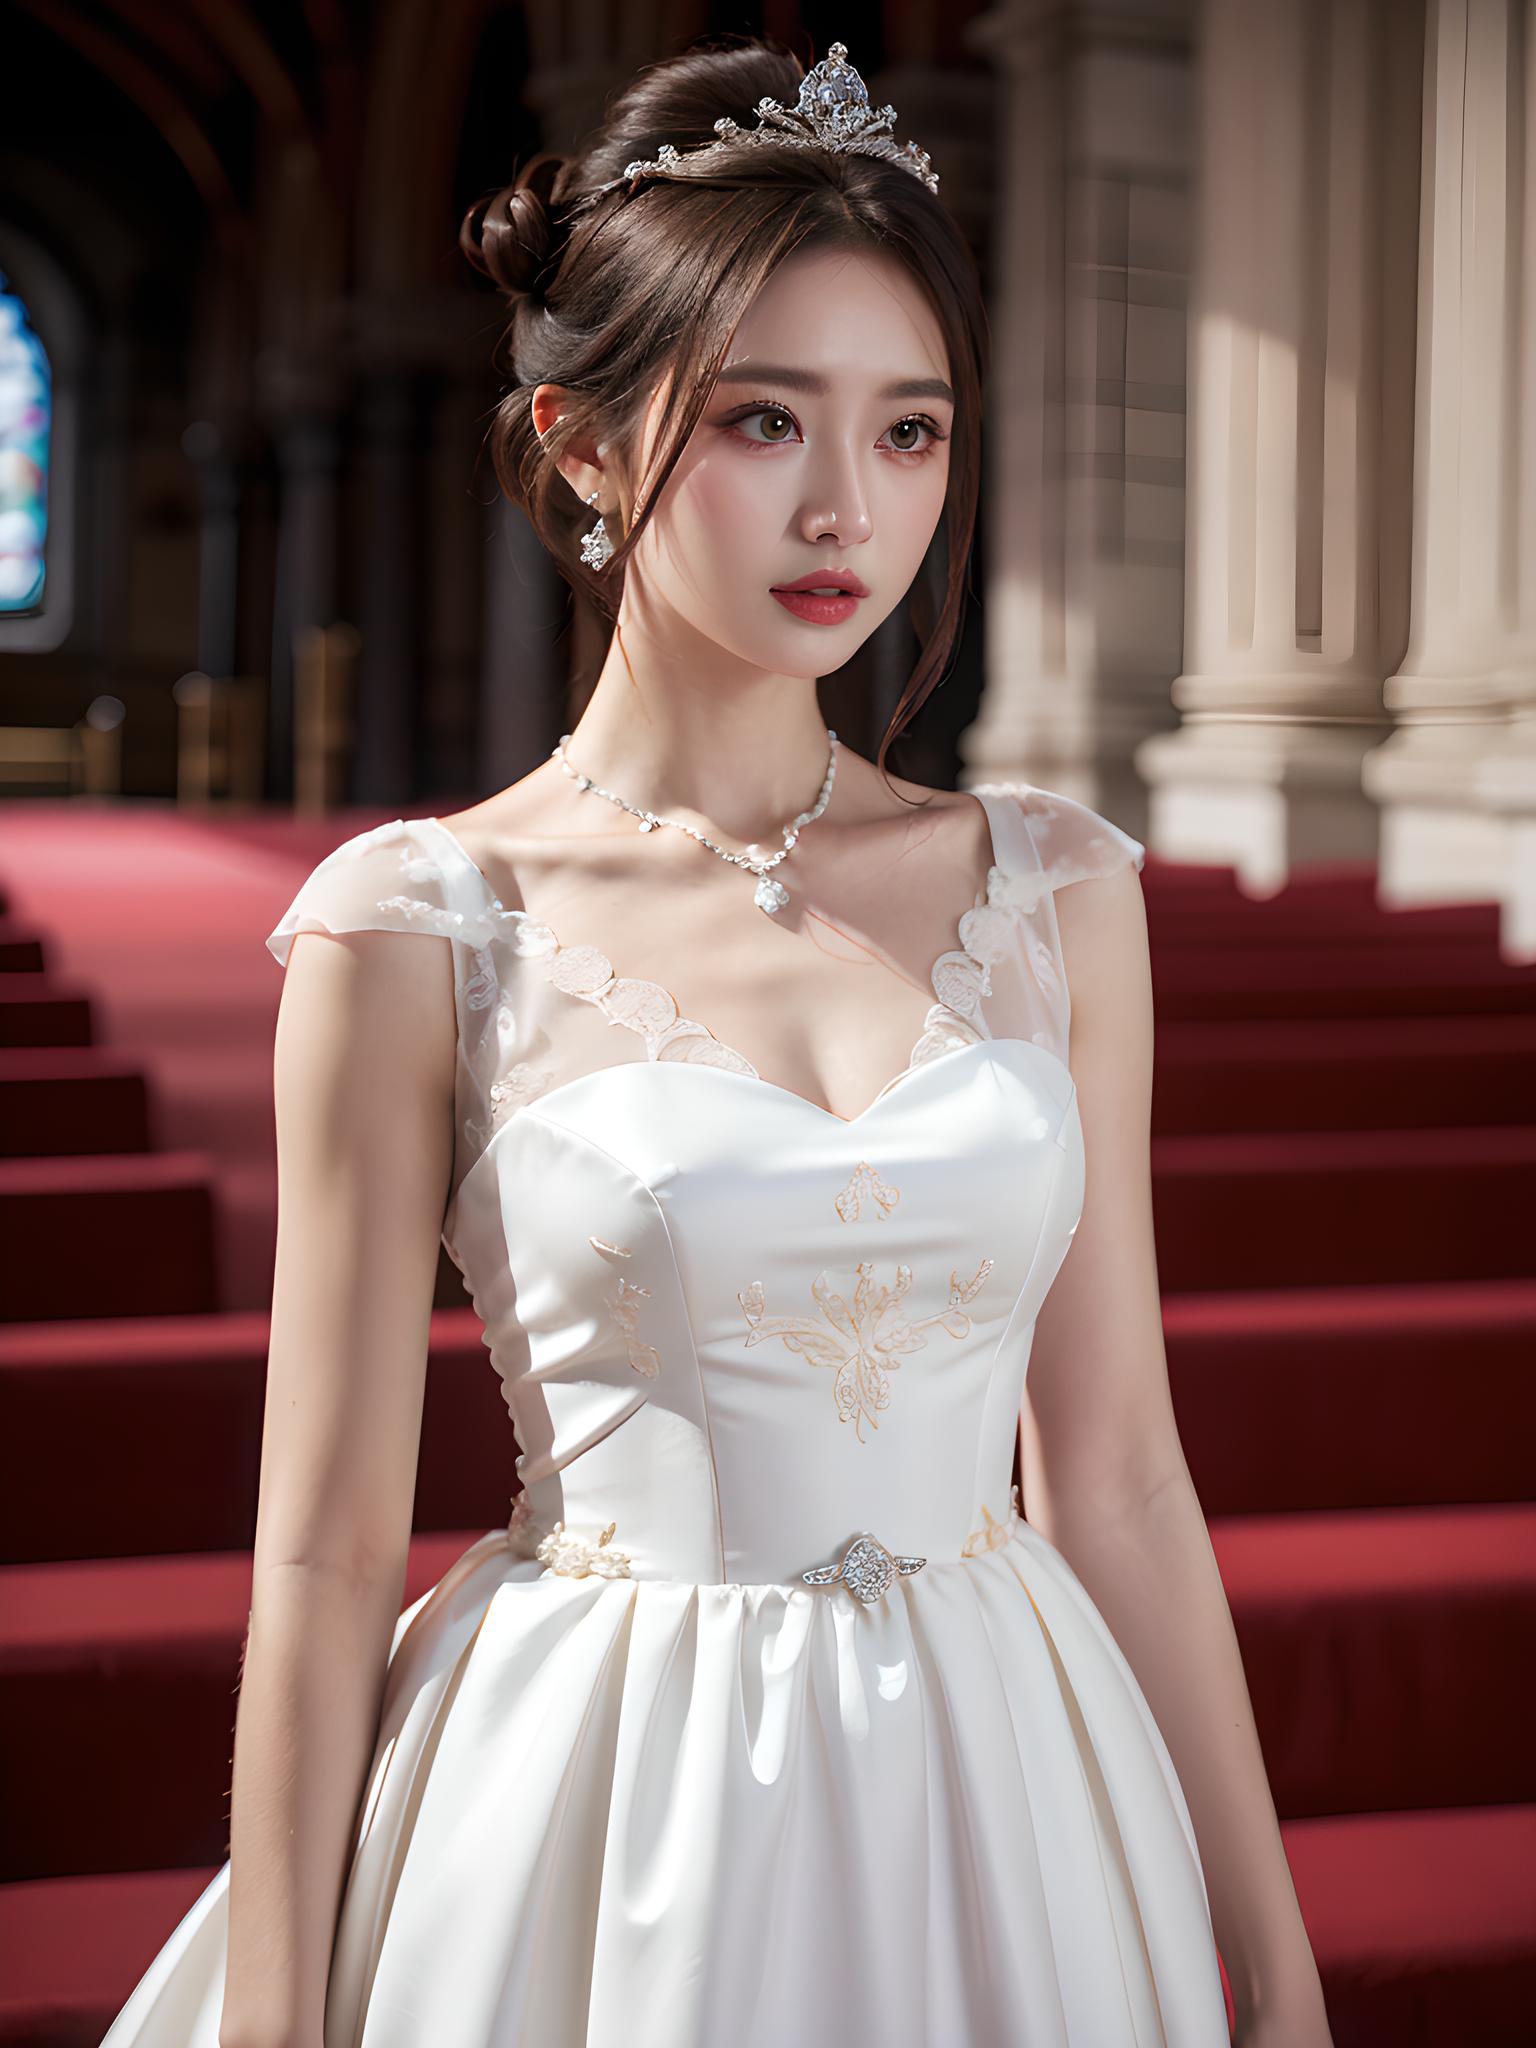 中国女孩在教堂的婚纱照